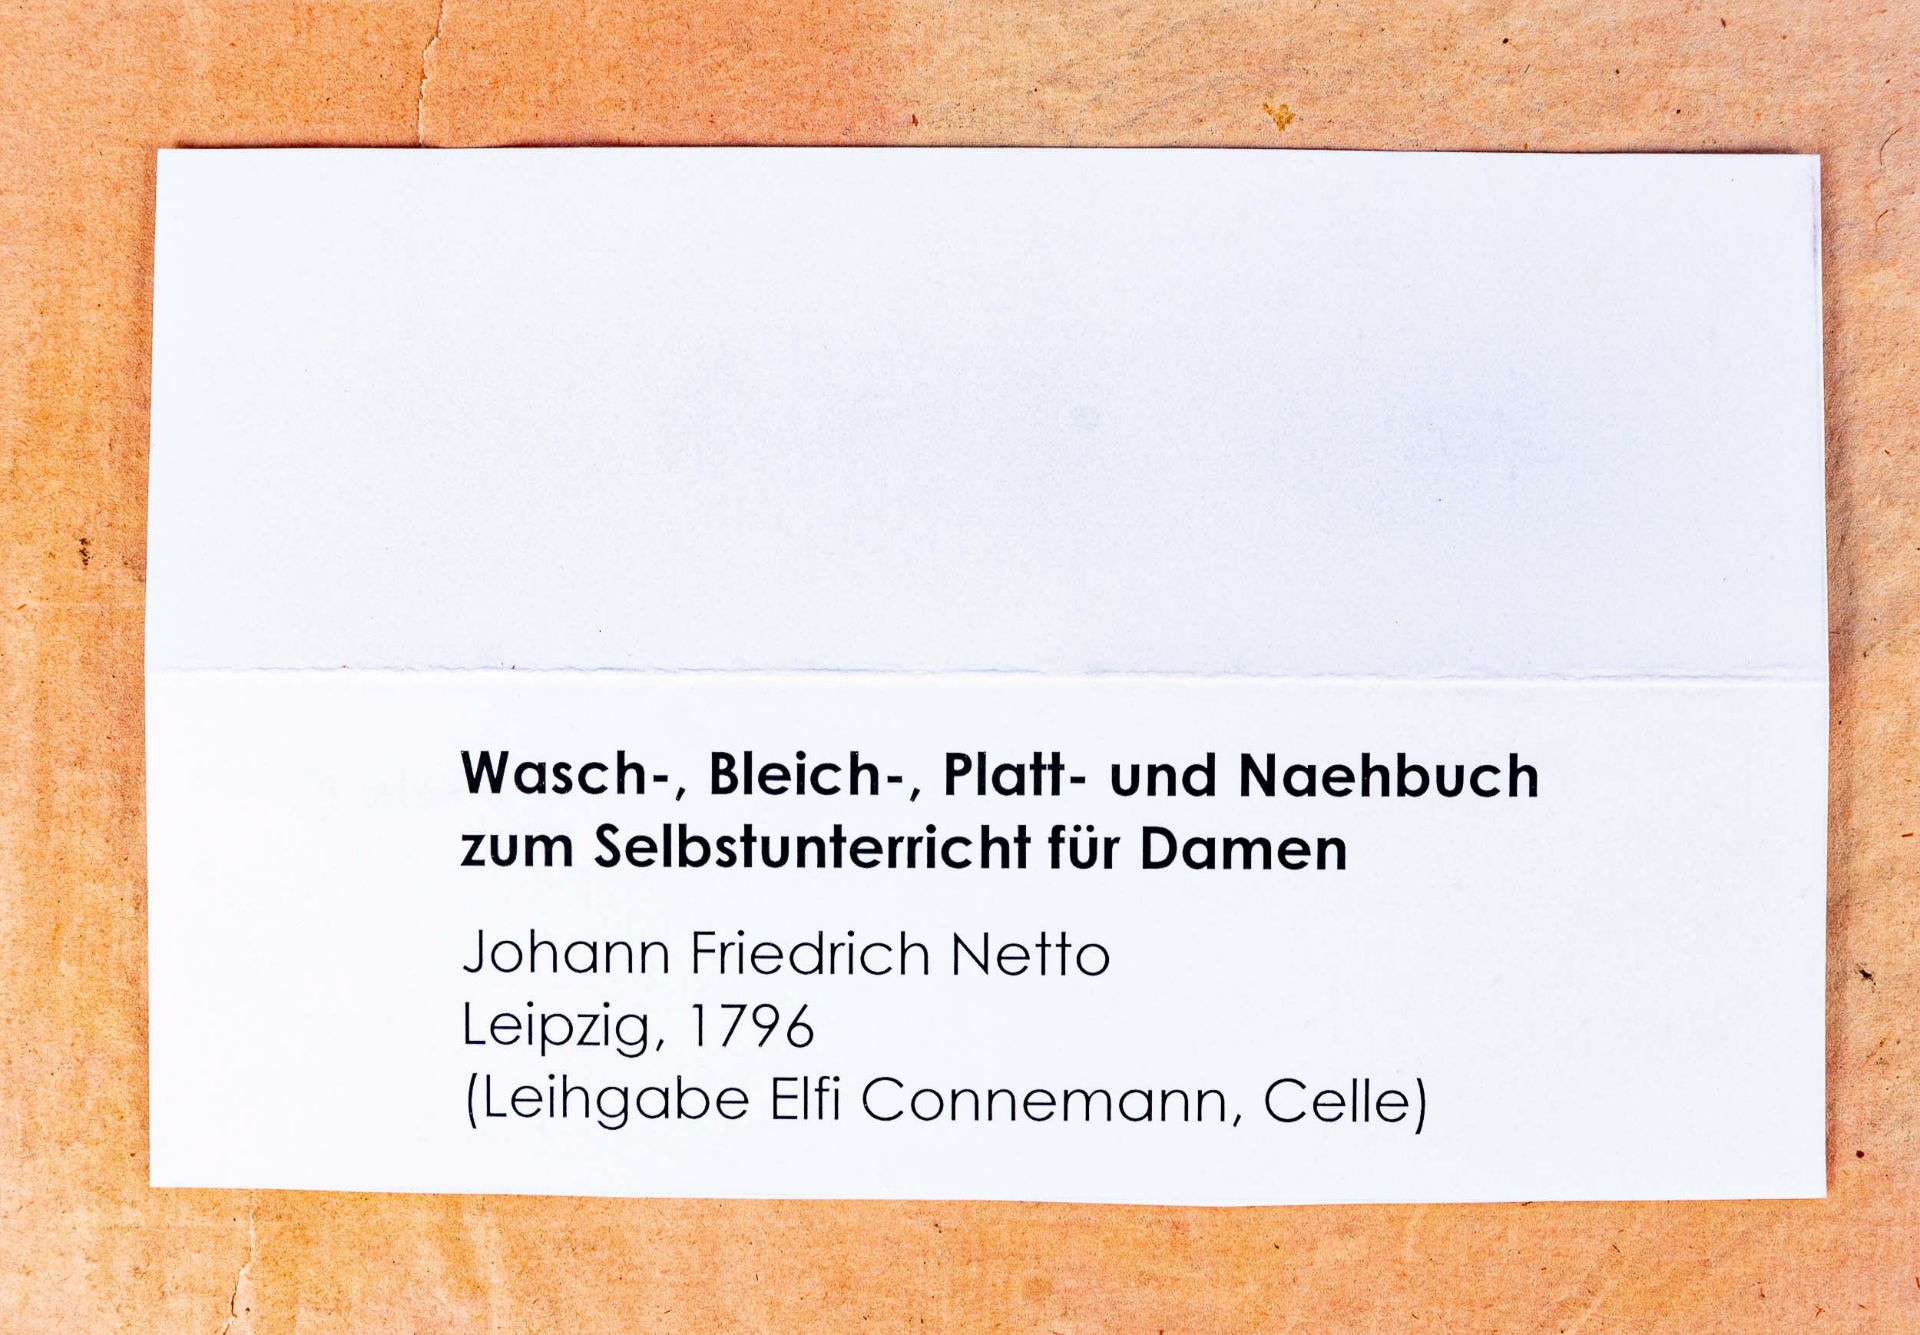 "WASCH  BLEICH  PLATT  UND NAEHBUCH" des Johann Friedrich Netto, Leipzig 1796, zum Selbstunterricht - Bild 3 aus 9